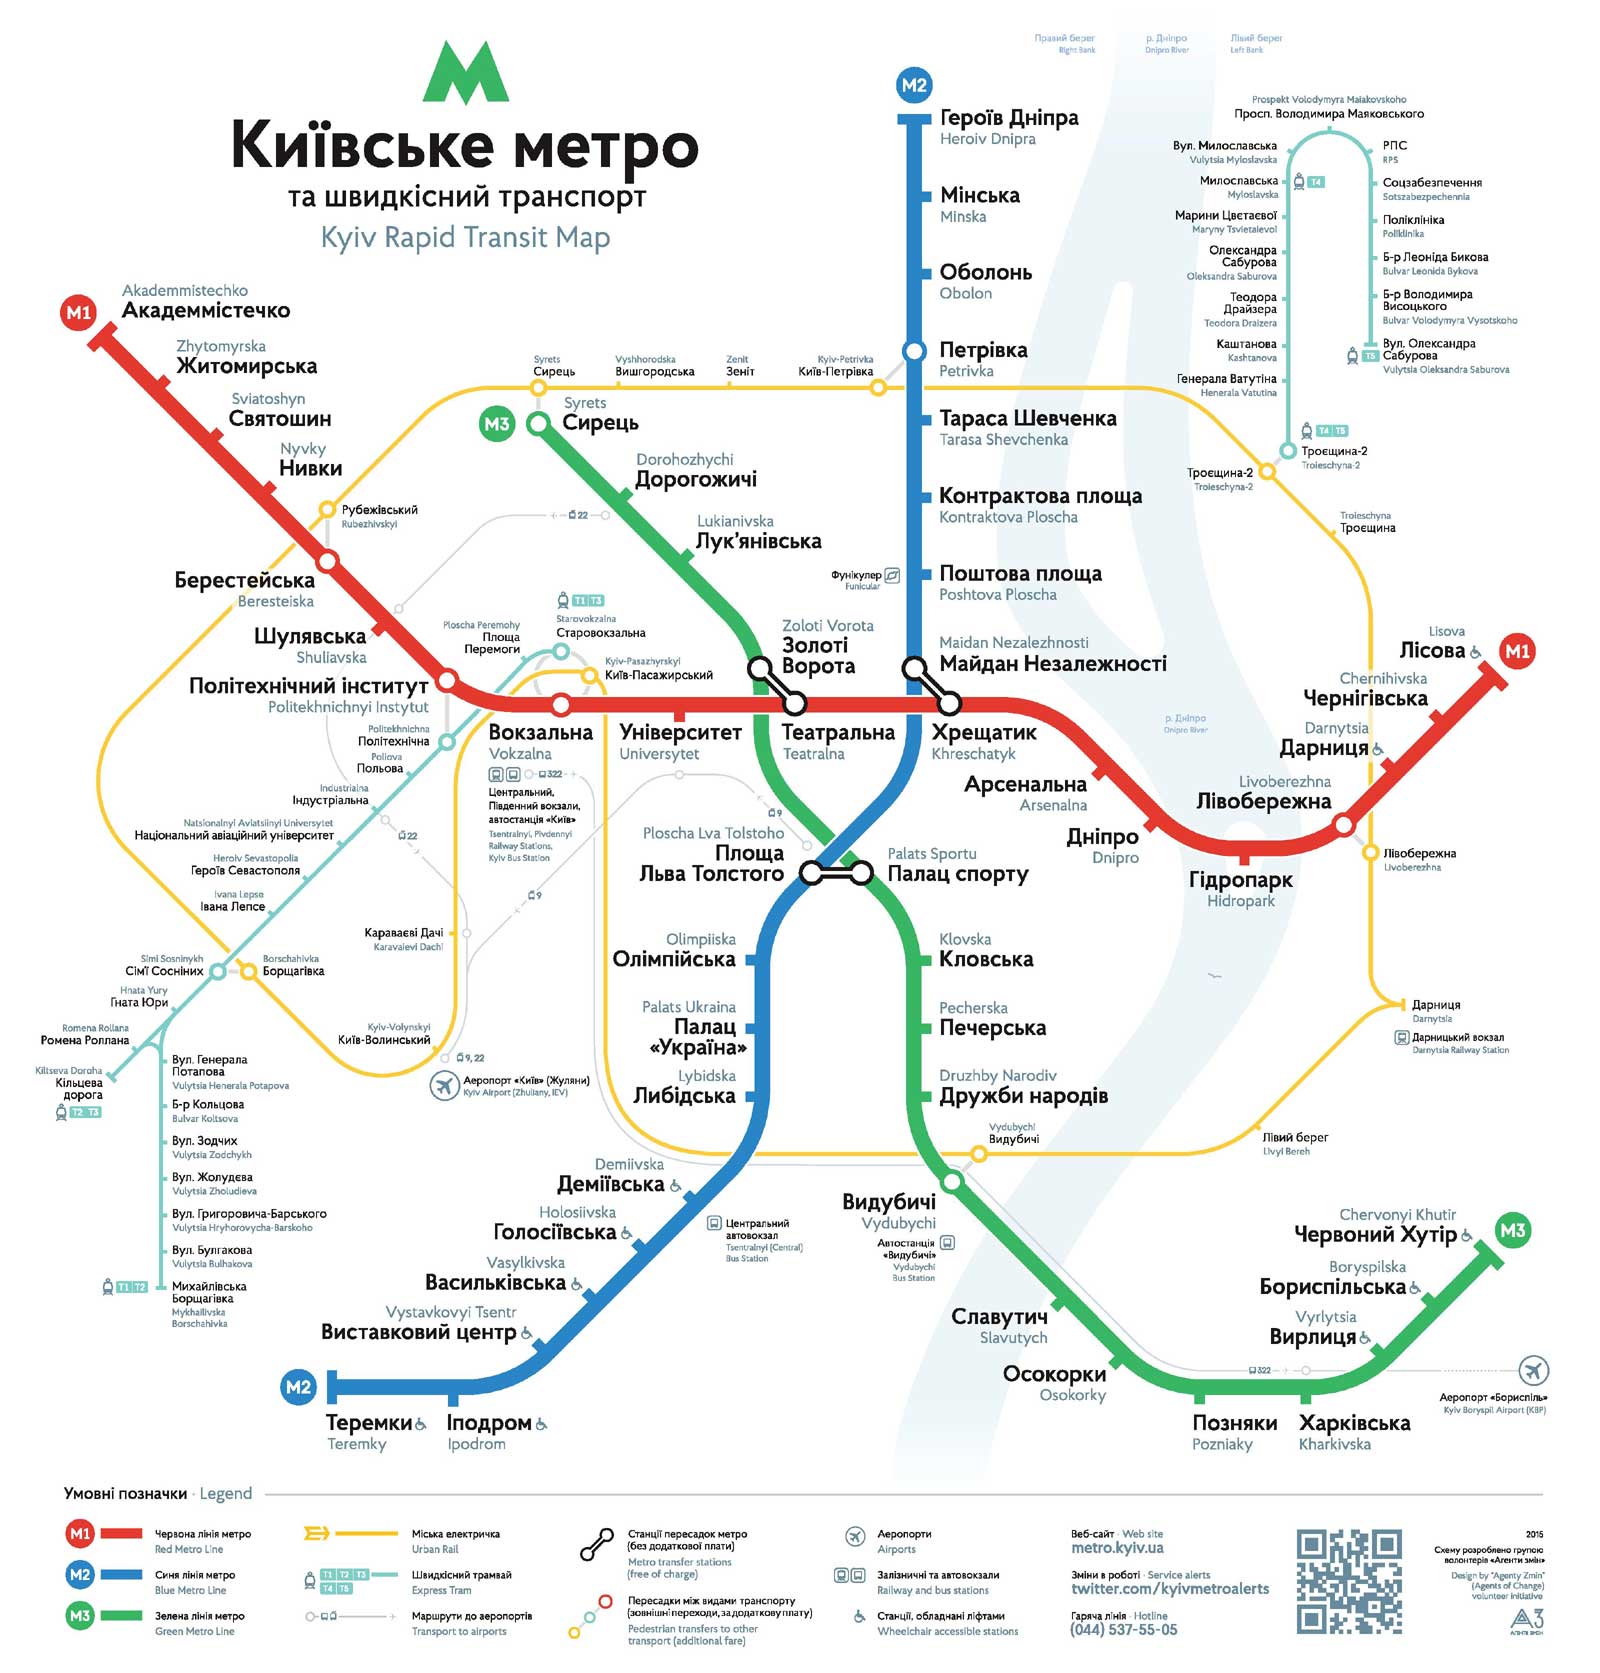 kiev metro map, kiev metro plan